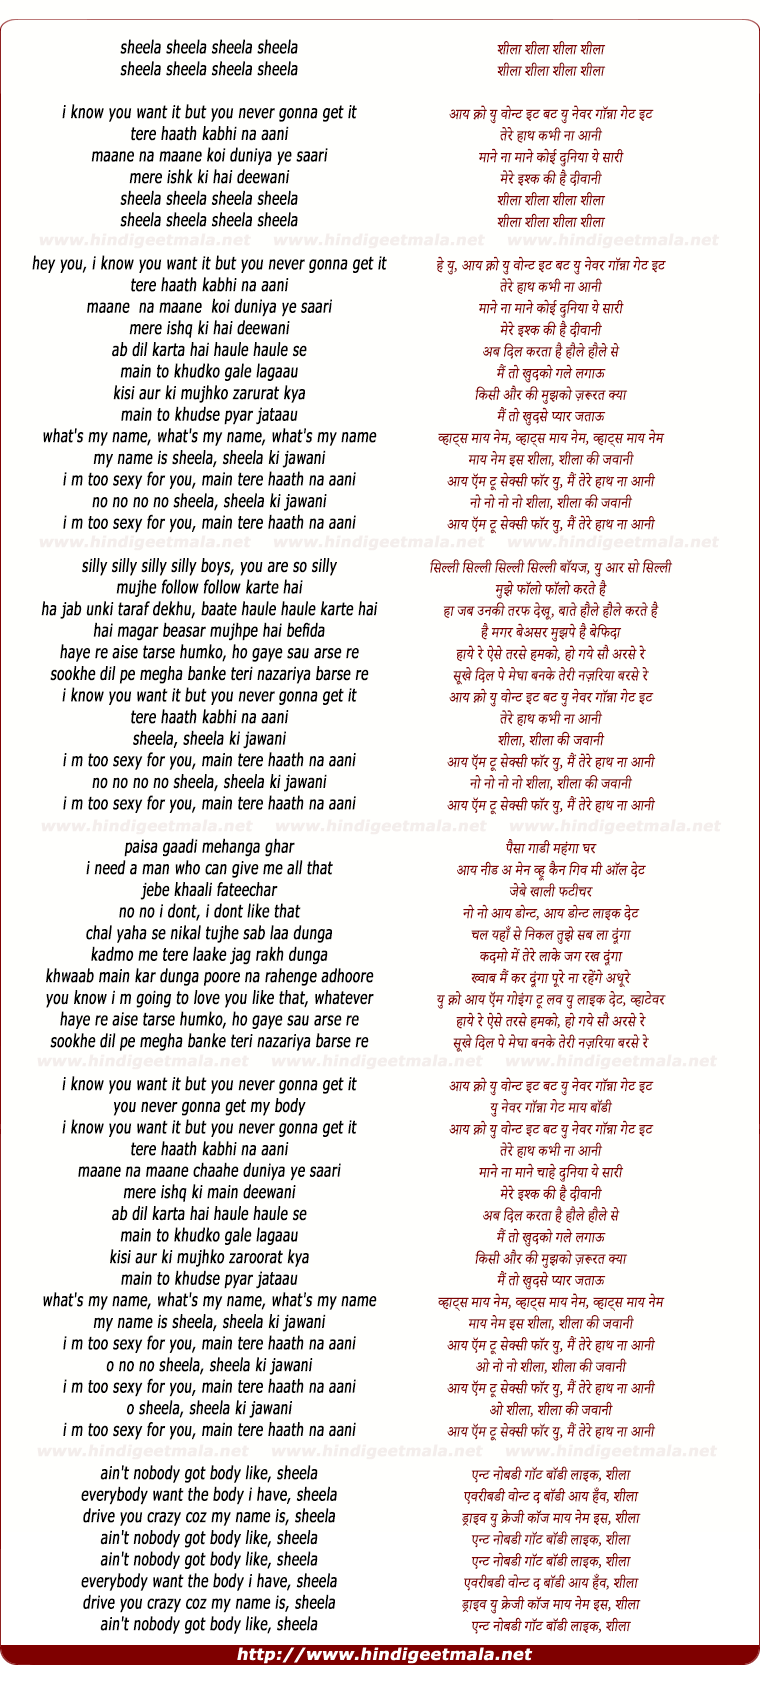 Sheila Ki Jawani (Remix) - शीला शीला शीला शीला